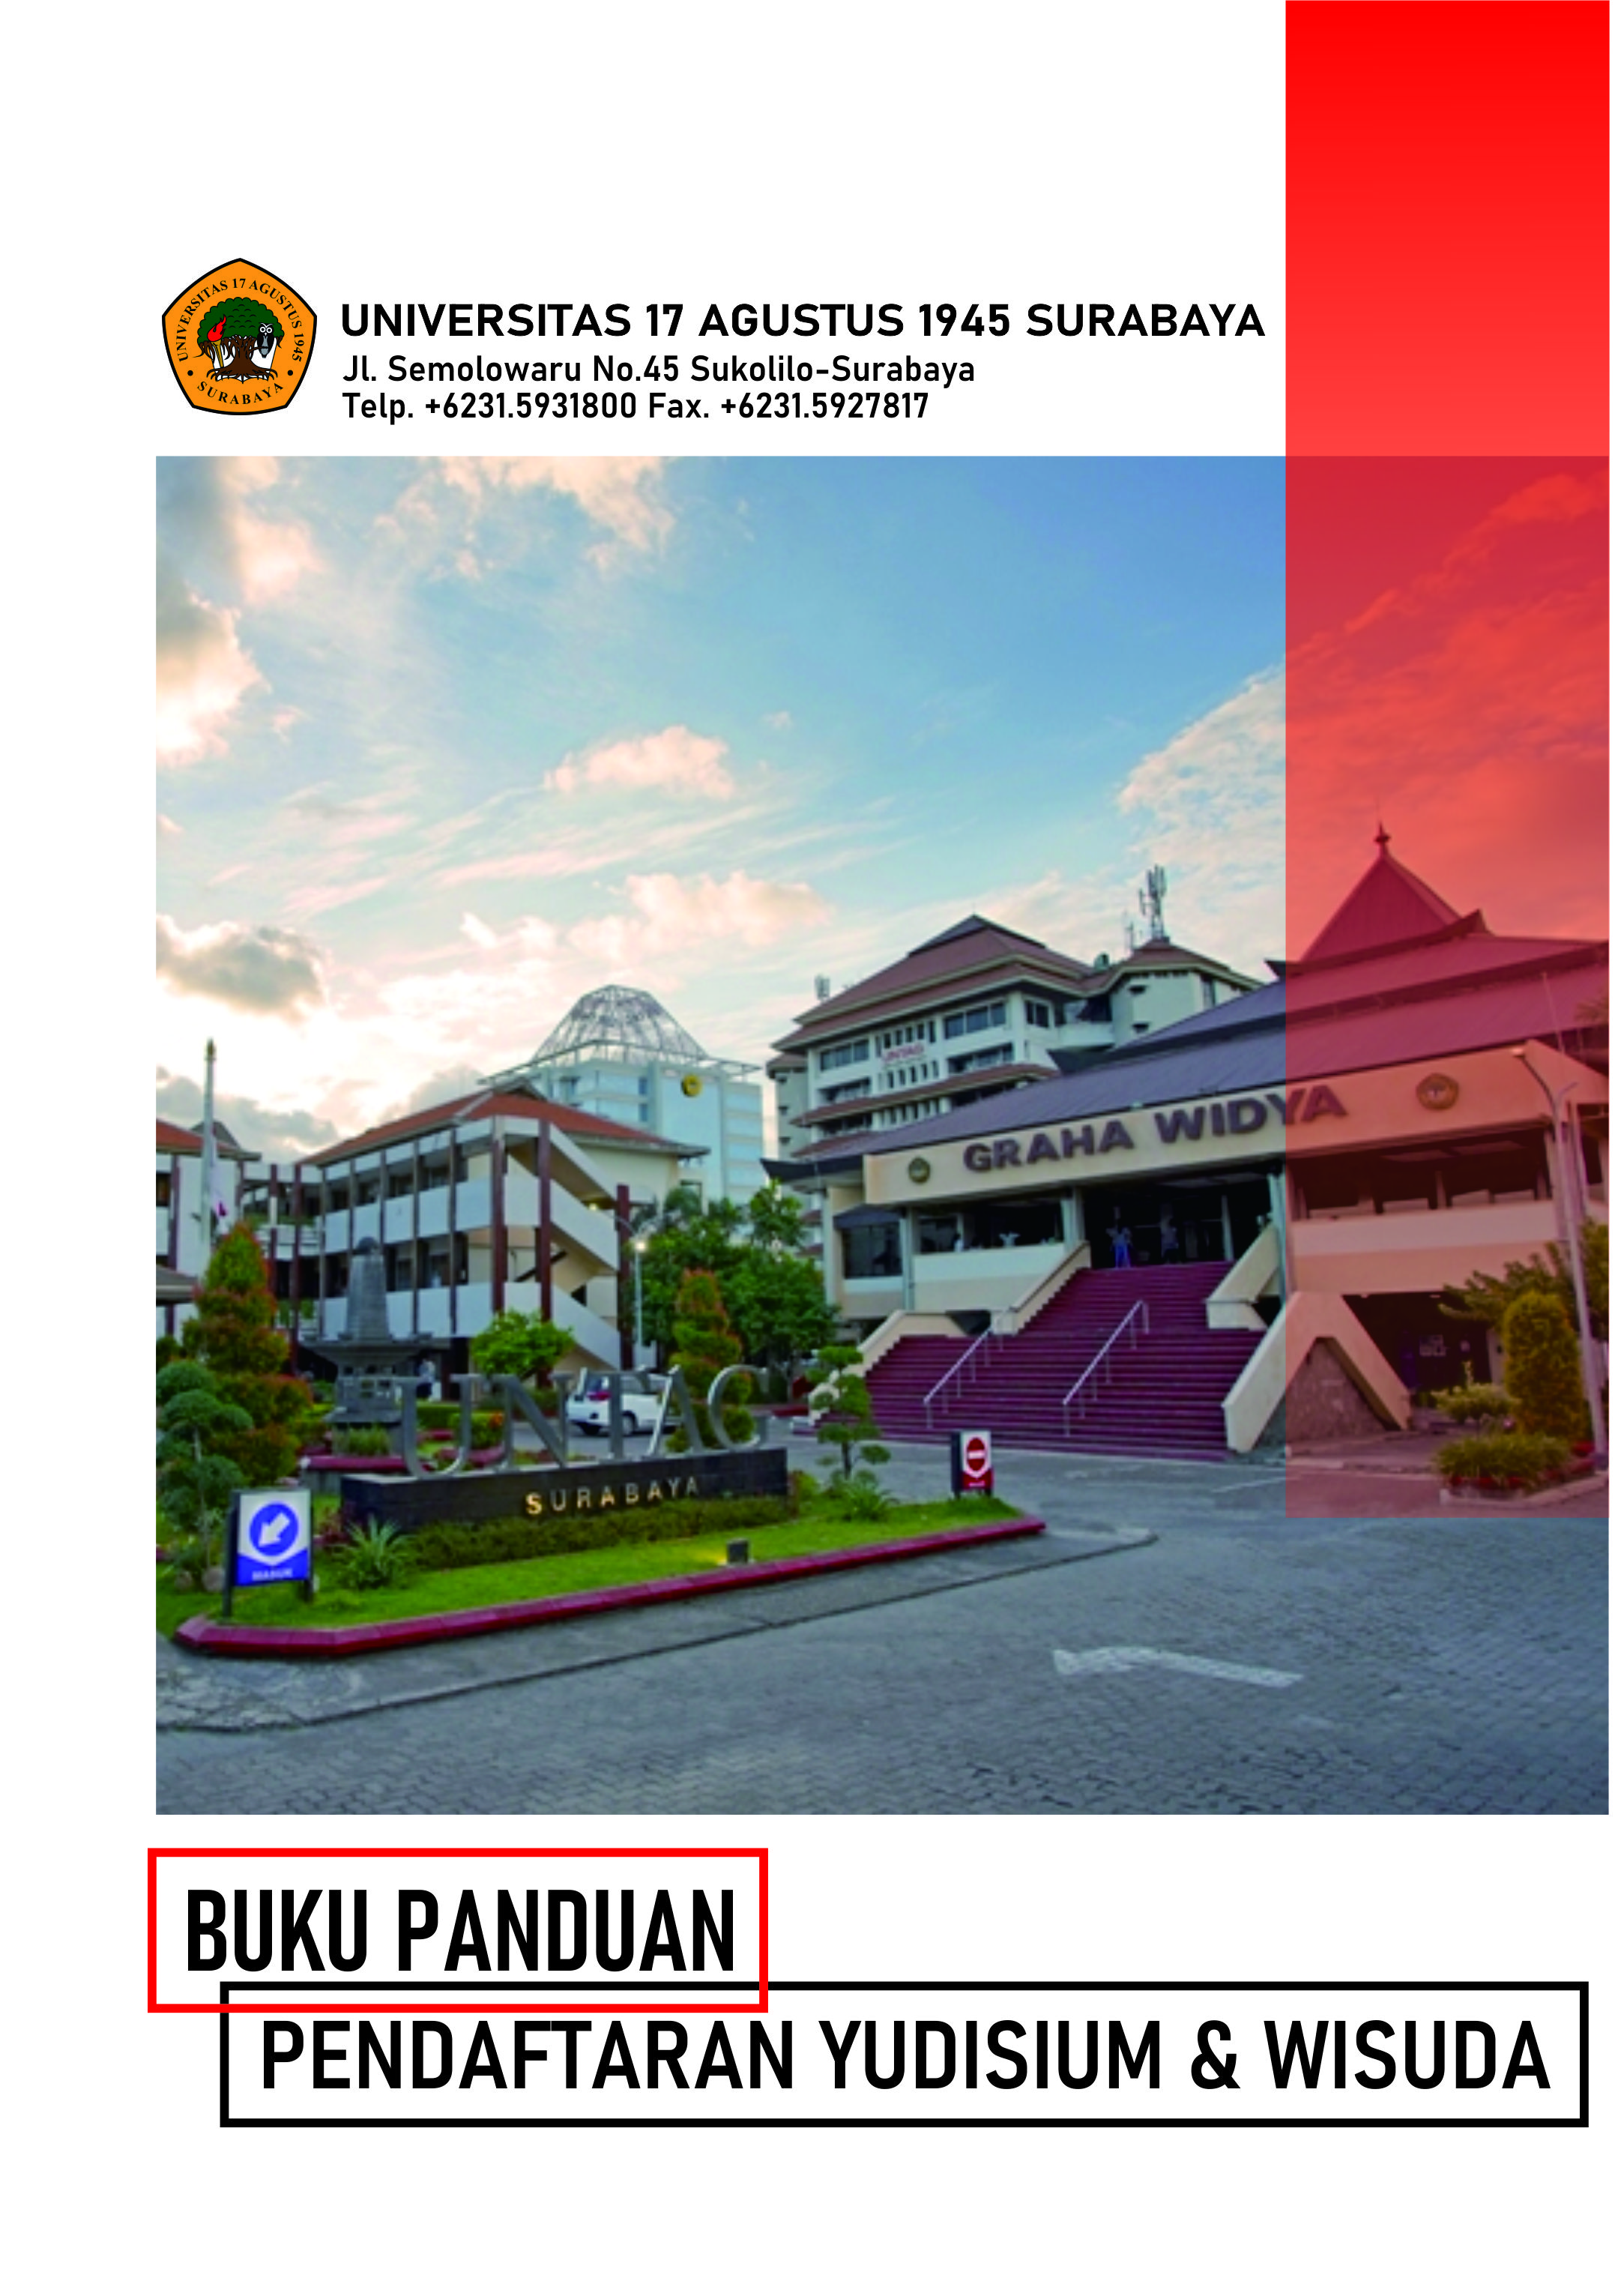 Buku Panduan Yudisium dan Pendaftaran Wisuda Semester Gasal 2021/2022